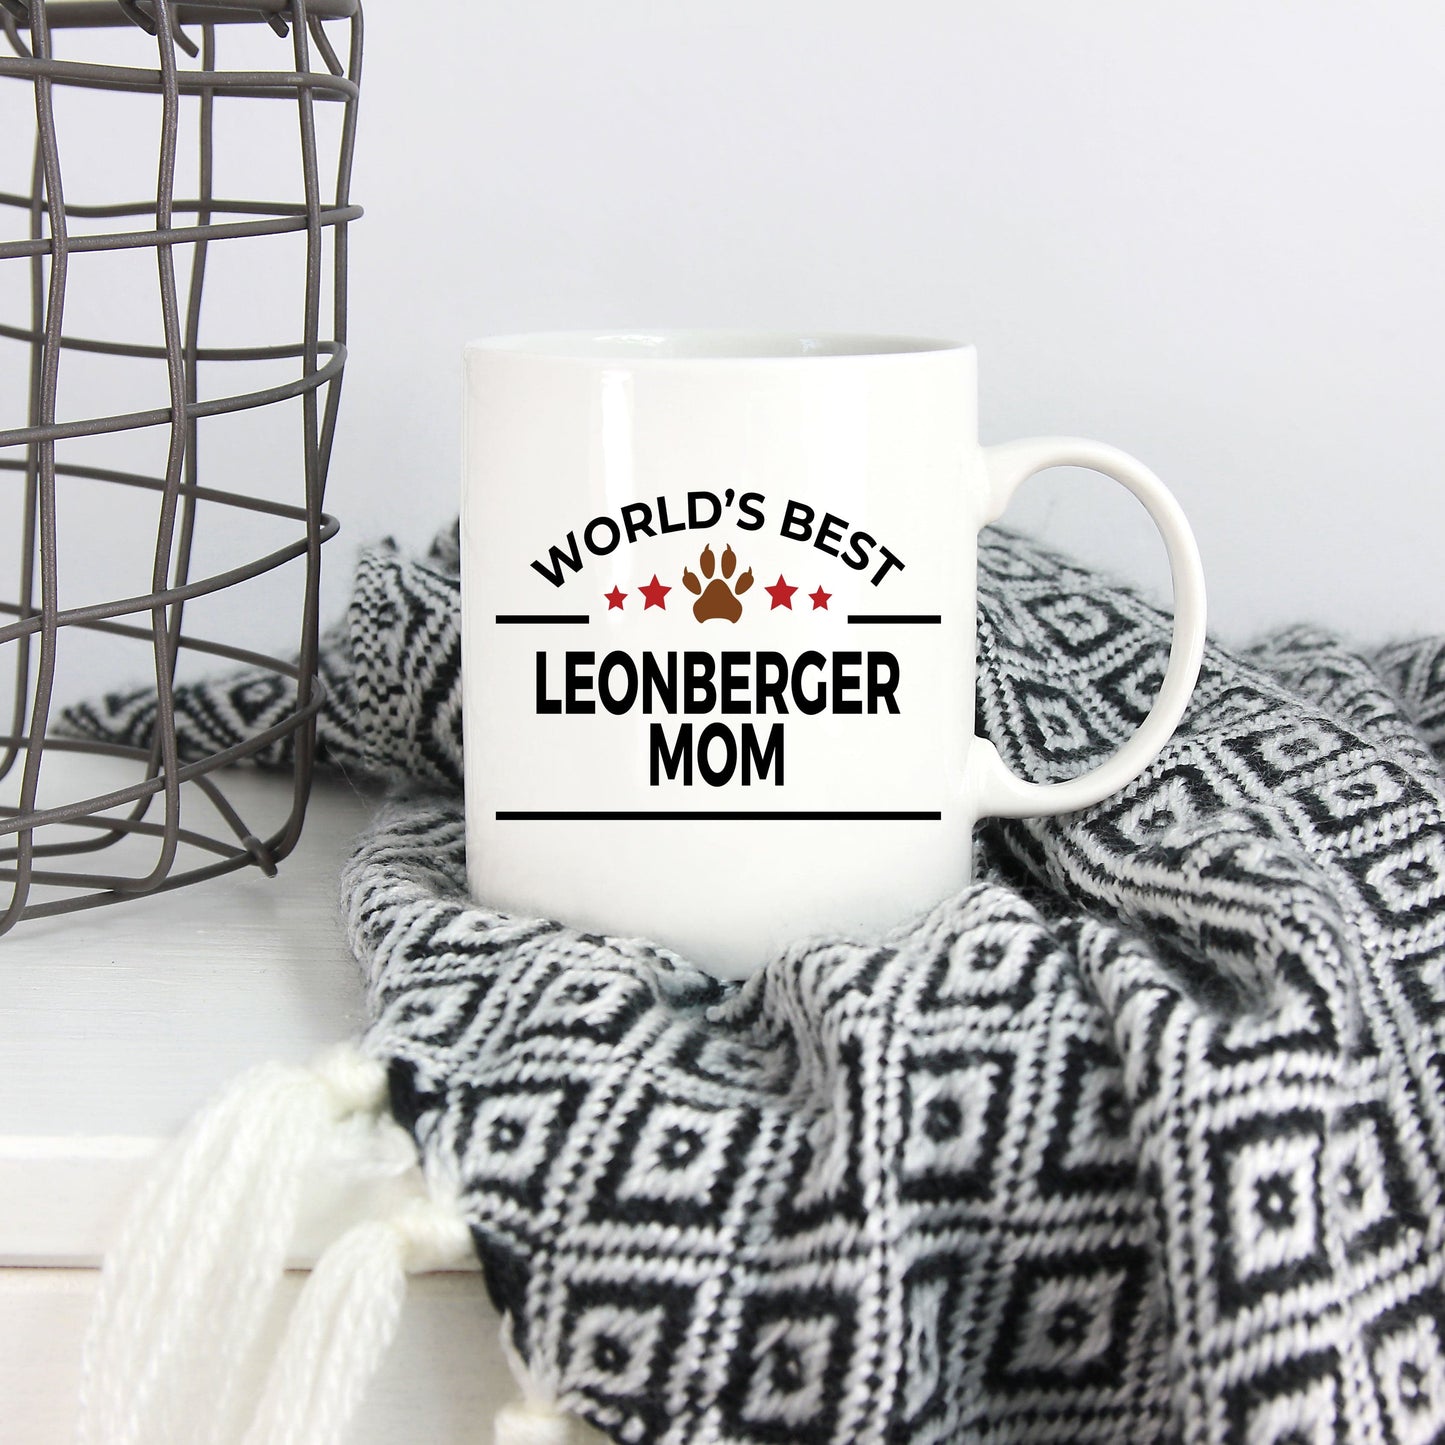 Leonberger Dog Mom Coffee Mug